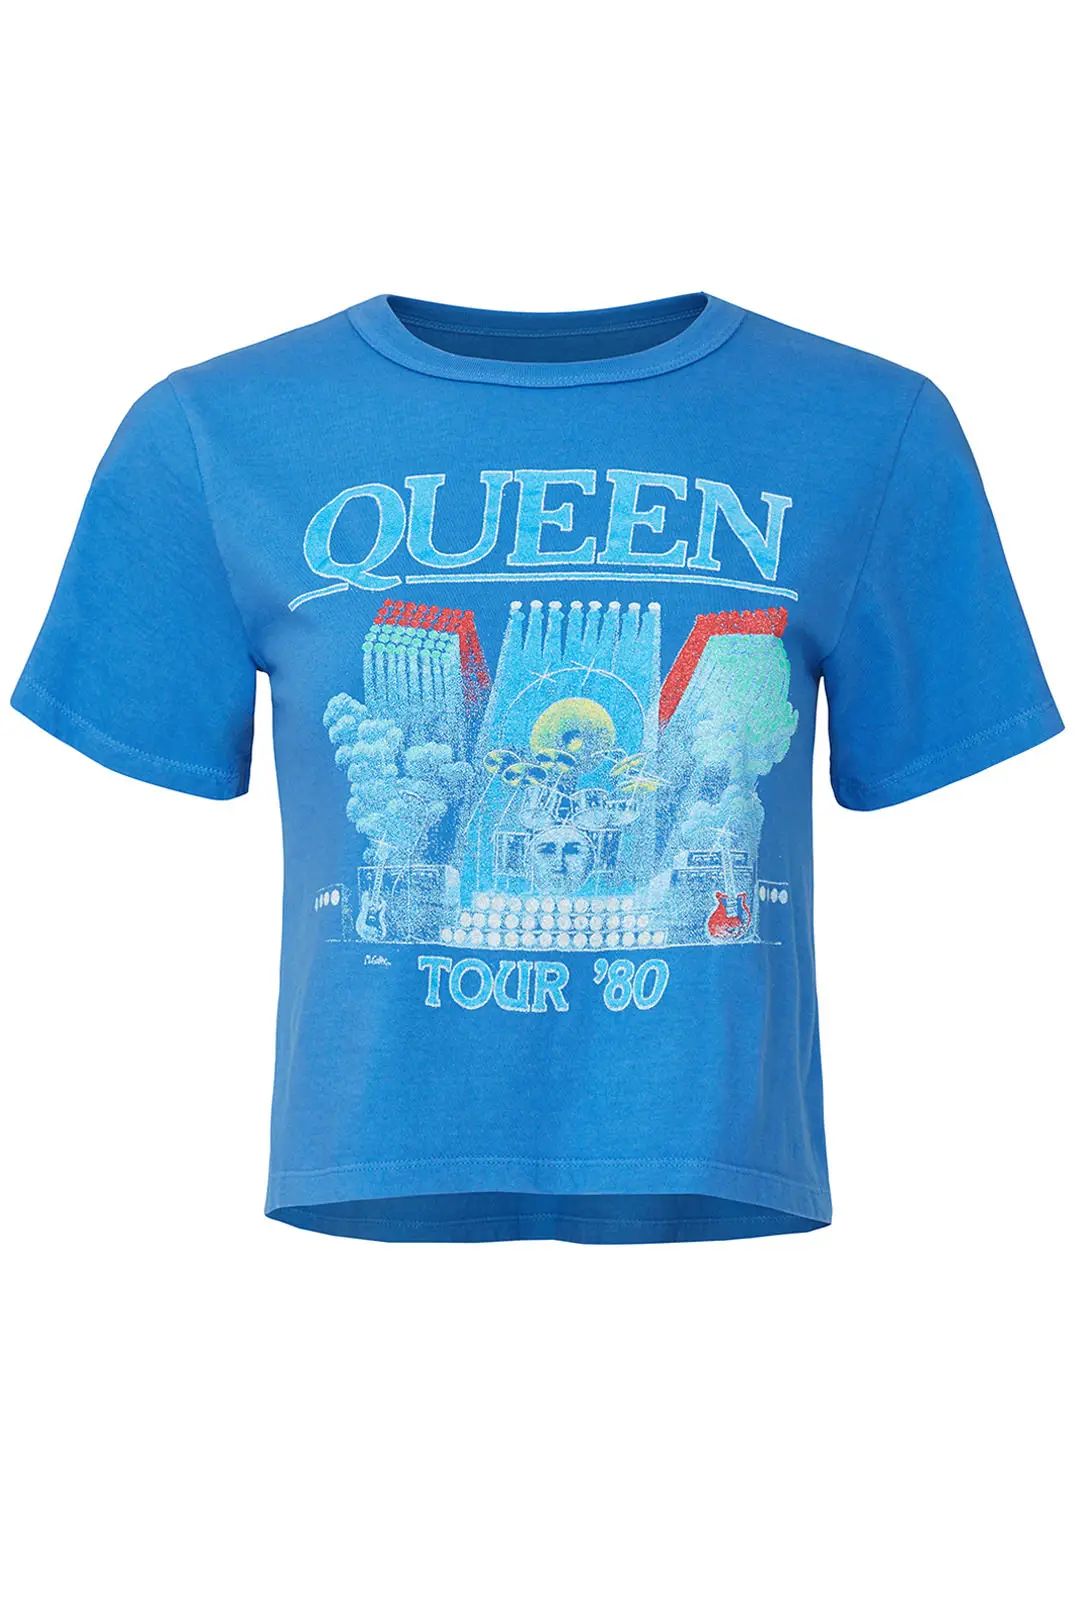 DAYDREAMER Queen In Concert Tee | Rent The Runway